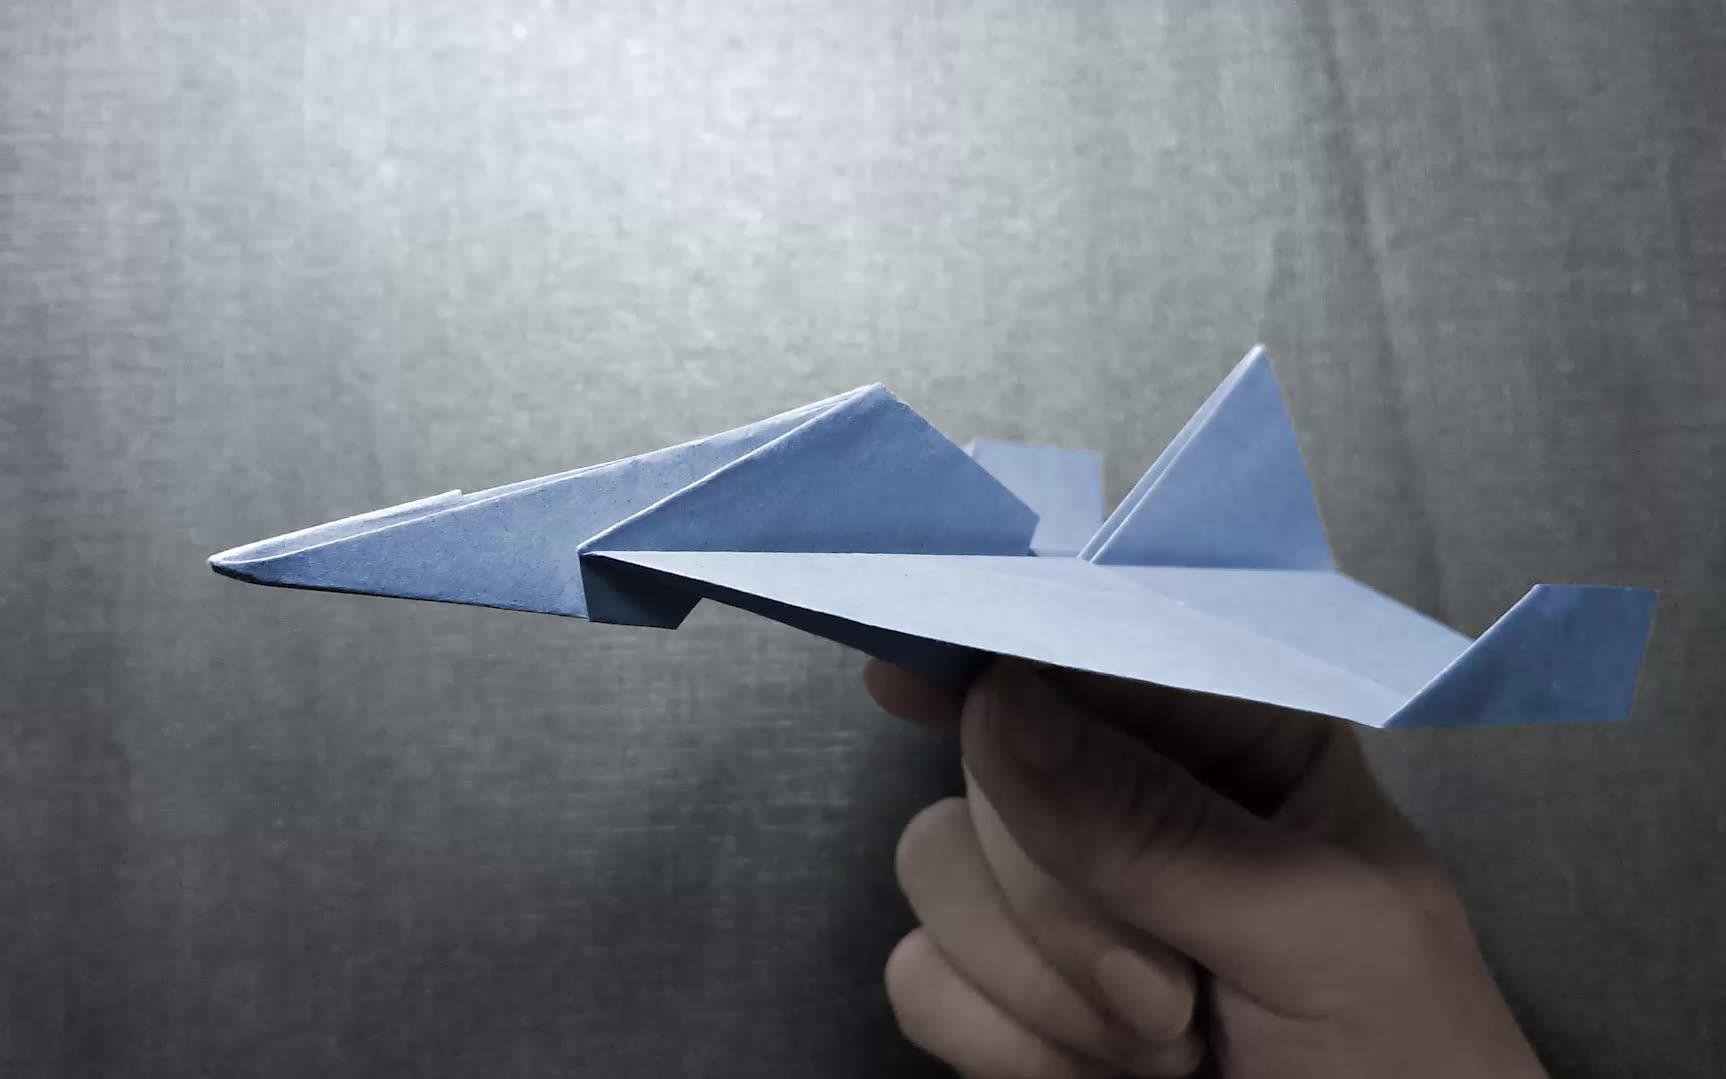 【折纸-教程】用正方形纸折个纸飞机,能飞,包会